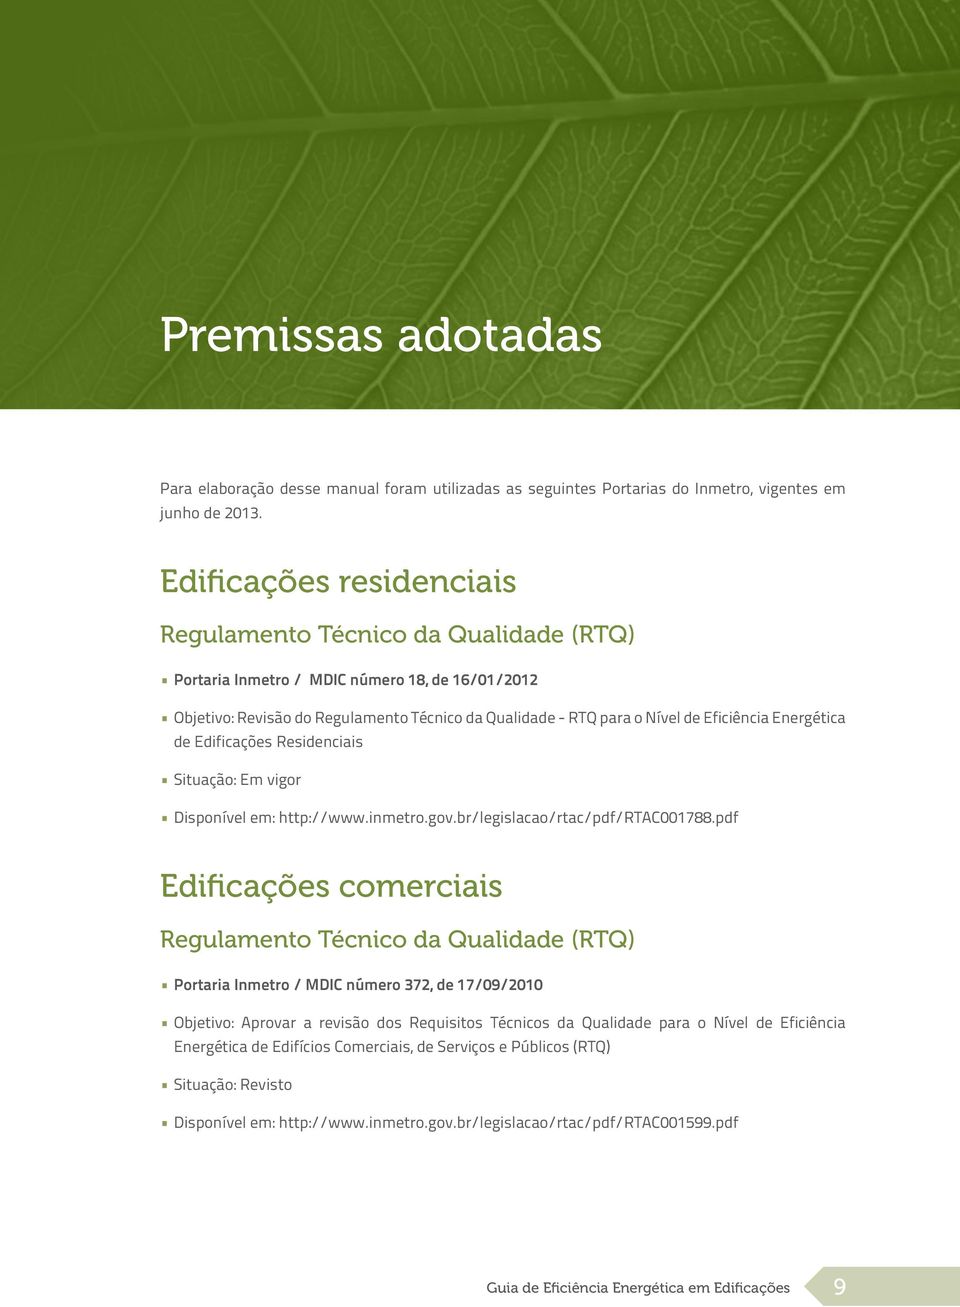 Energética de Edificações Residenciais Situação: Em vigor Disponível em: http://www.inmetro.gov.br/legislacao/rtac/pdf/rtac001788.